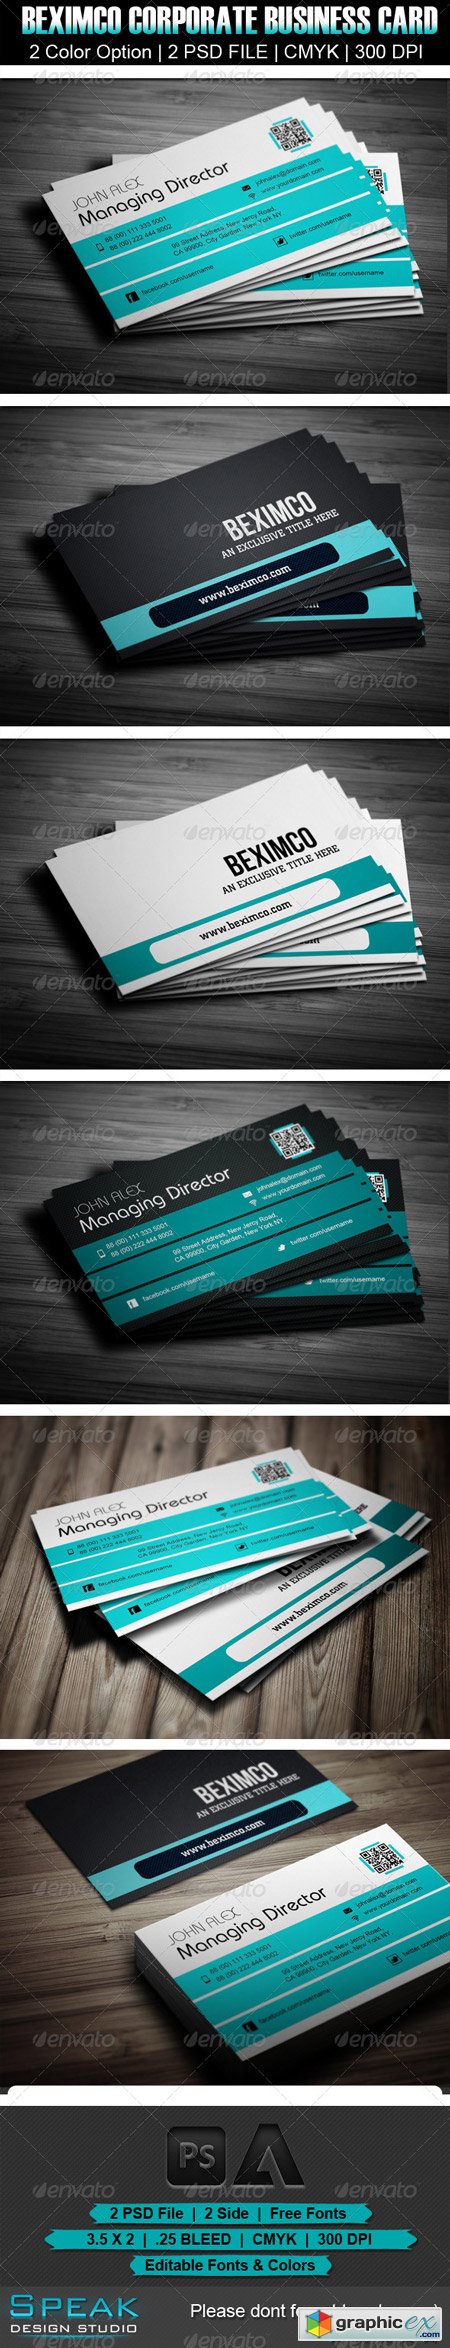 Beximco Corporate Business Card Design